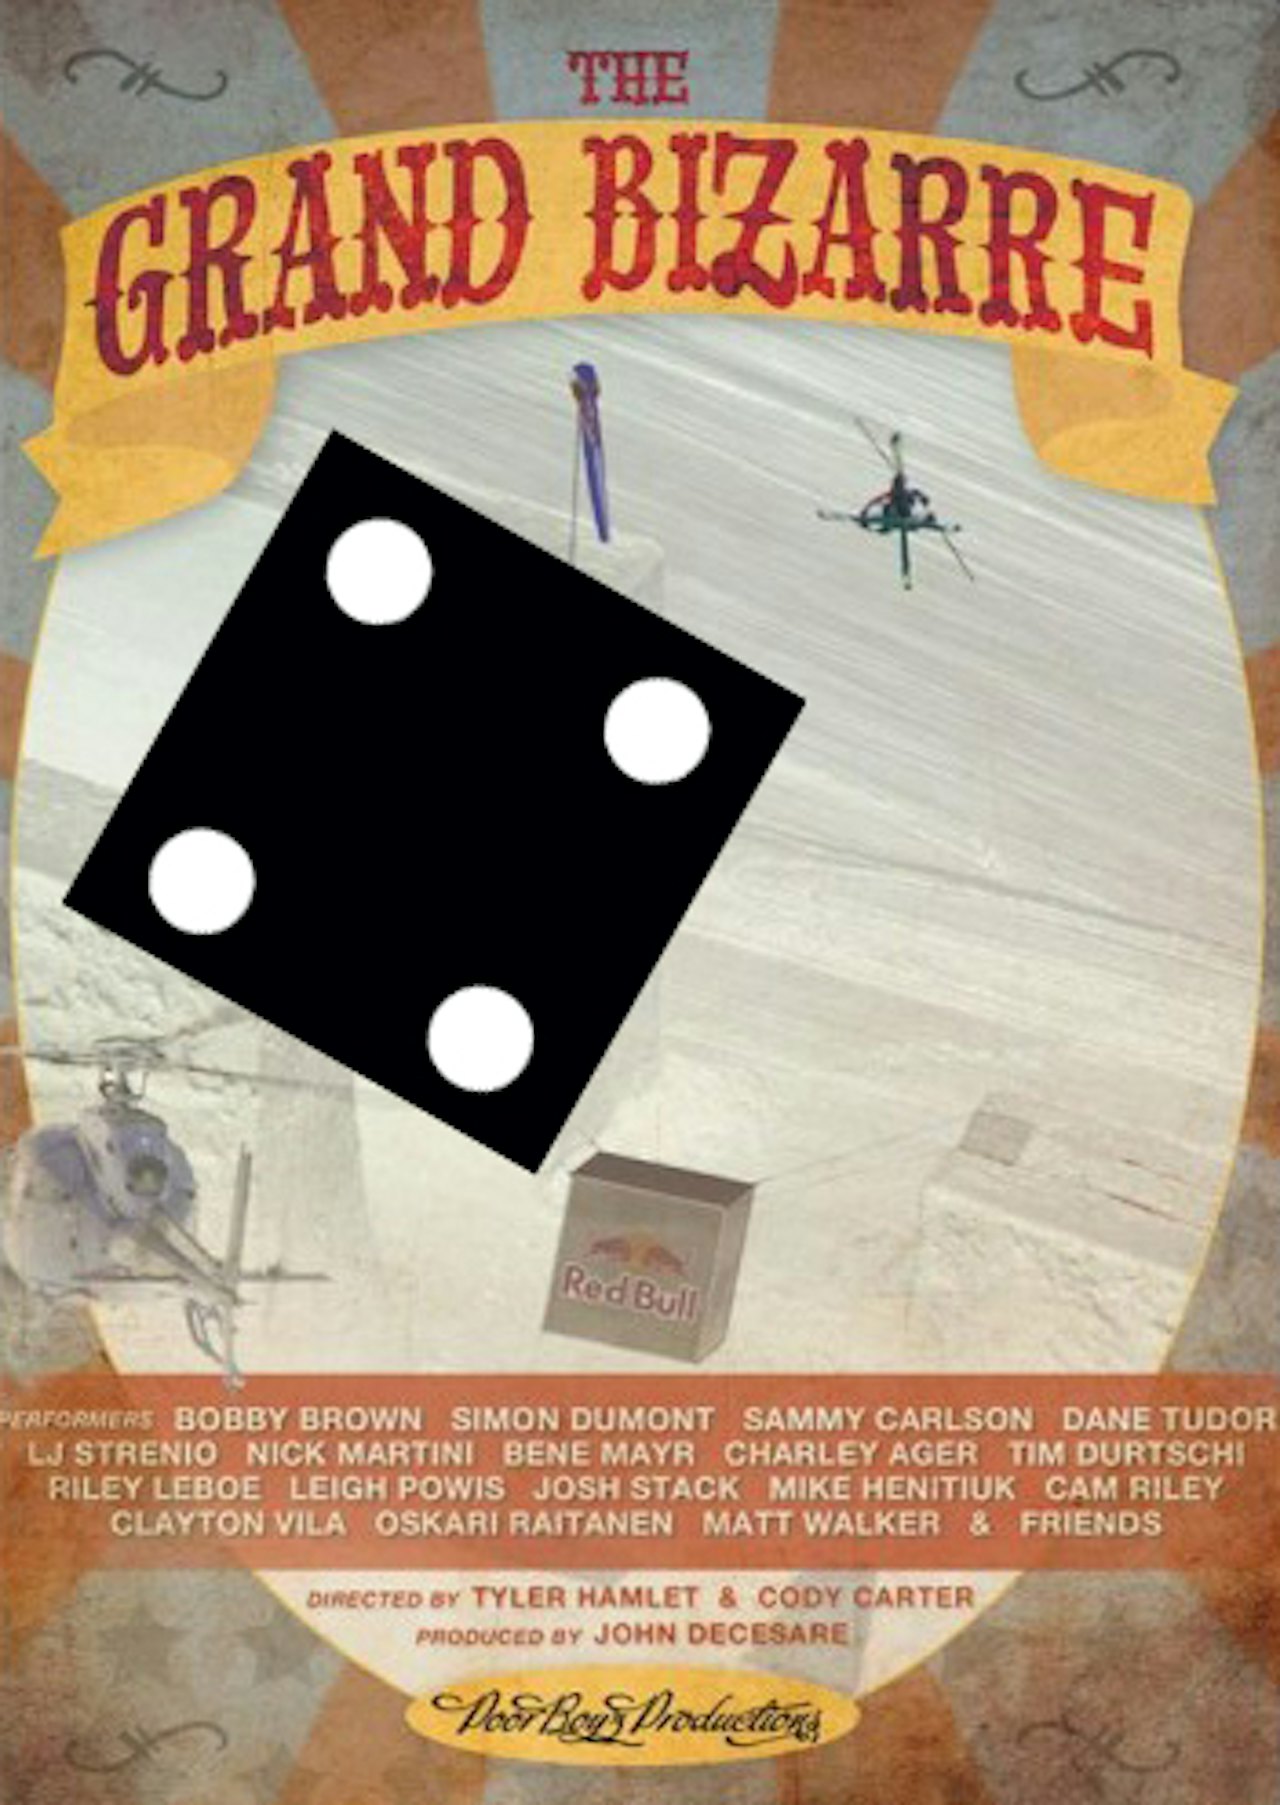 POORBOYZ: Ikke like bra som bonusfilmen om Seth Morrison som følger med hvis du kjøper The Grand Bizarre på DVD.